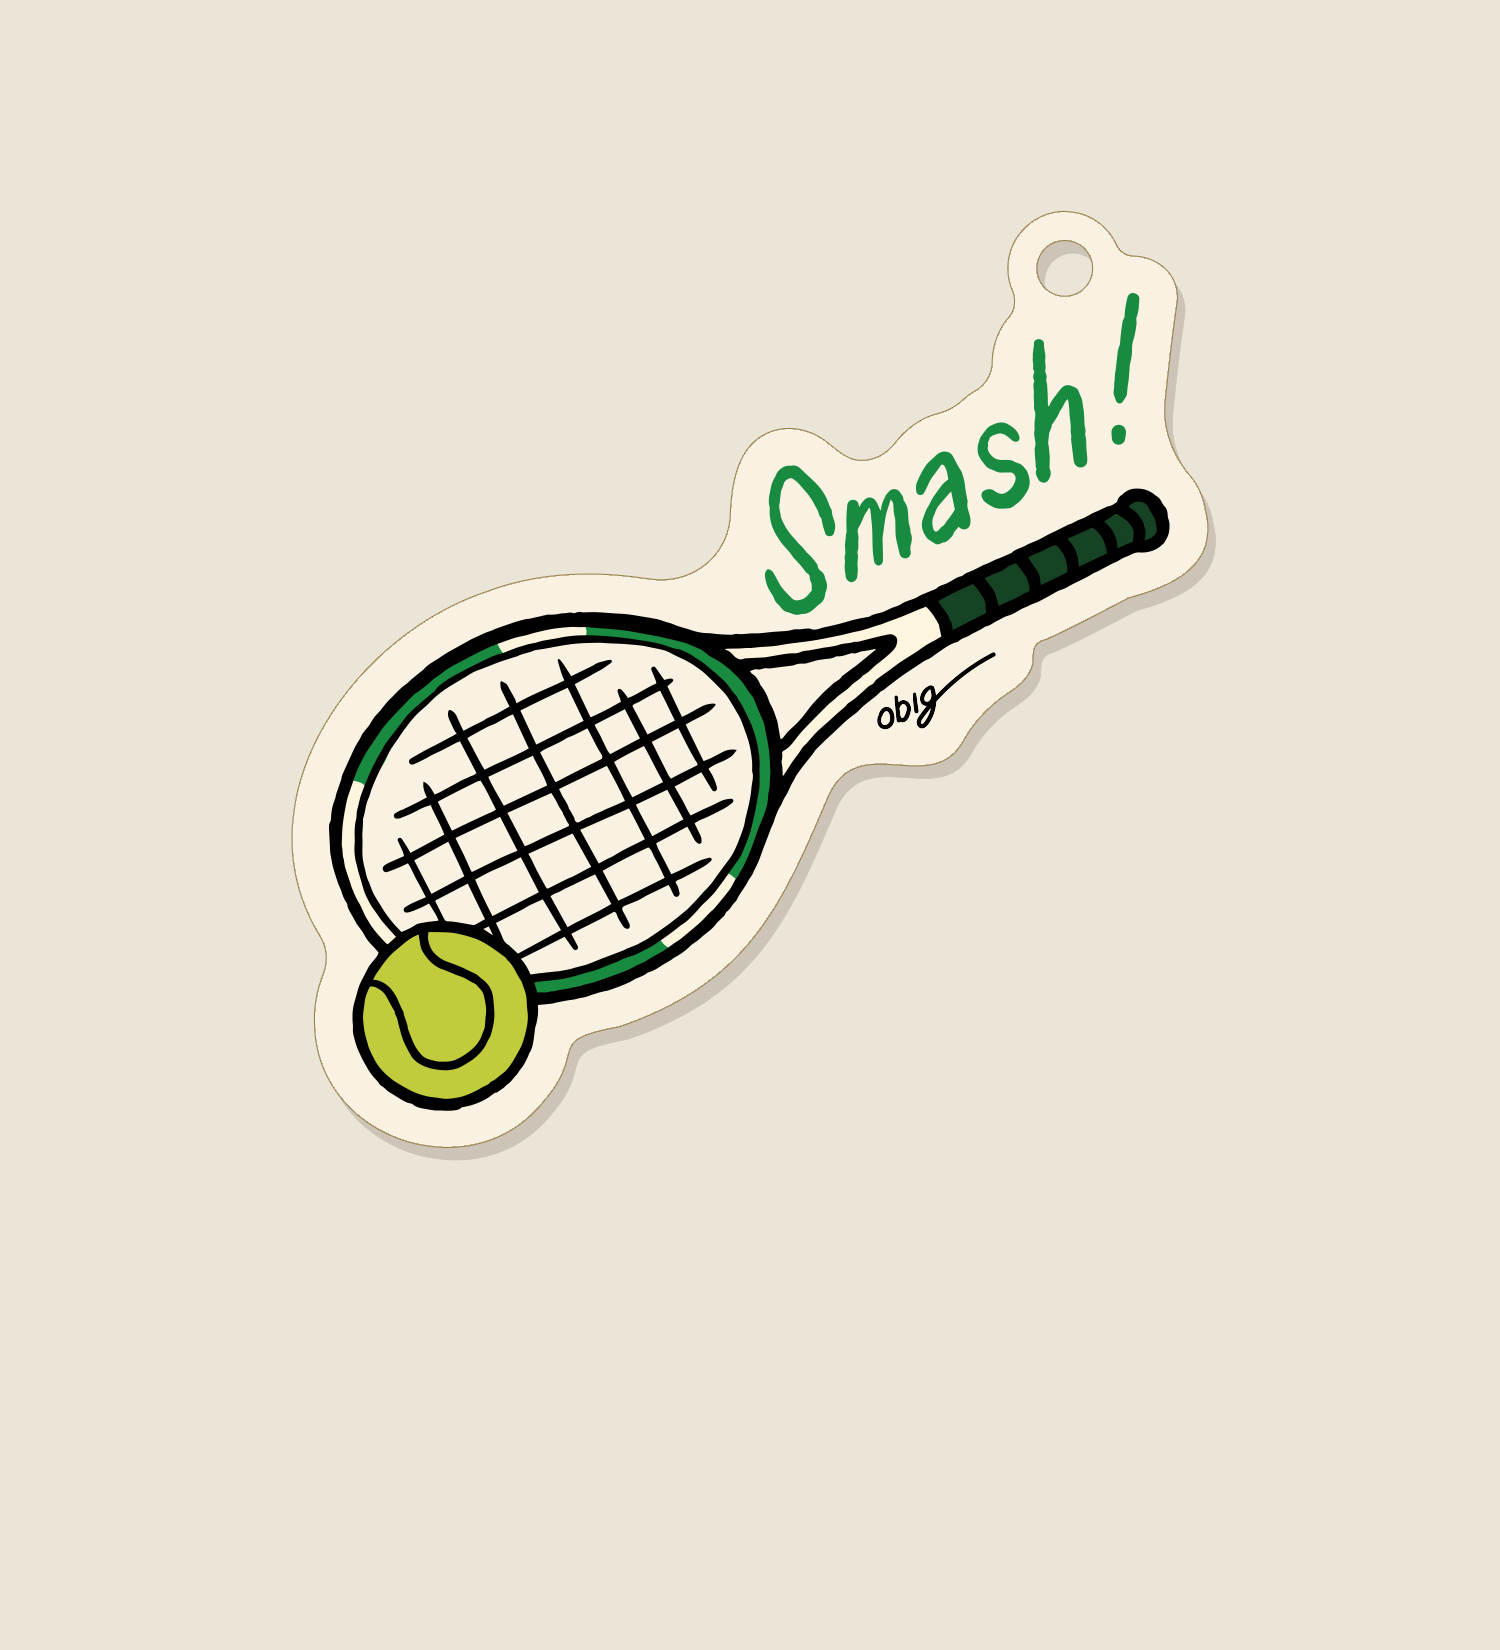 [KEYRING] Tennis - Smash